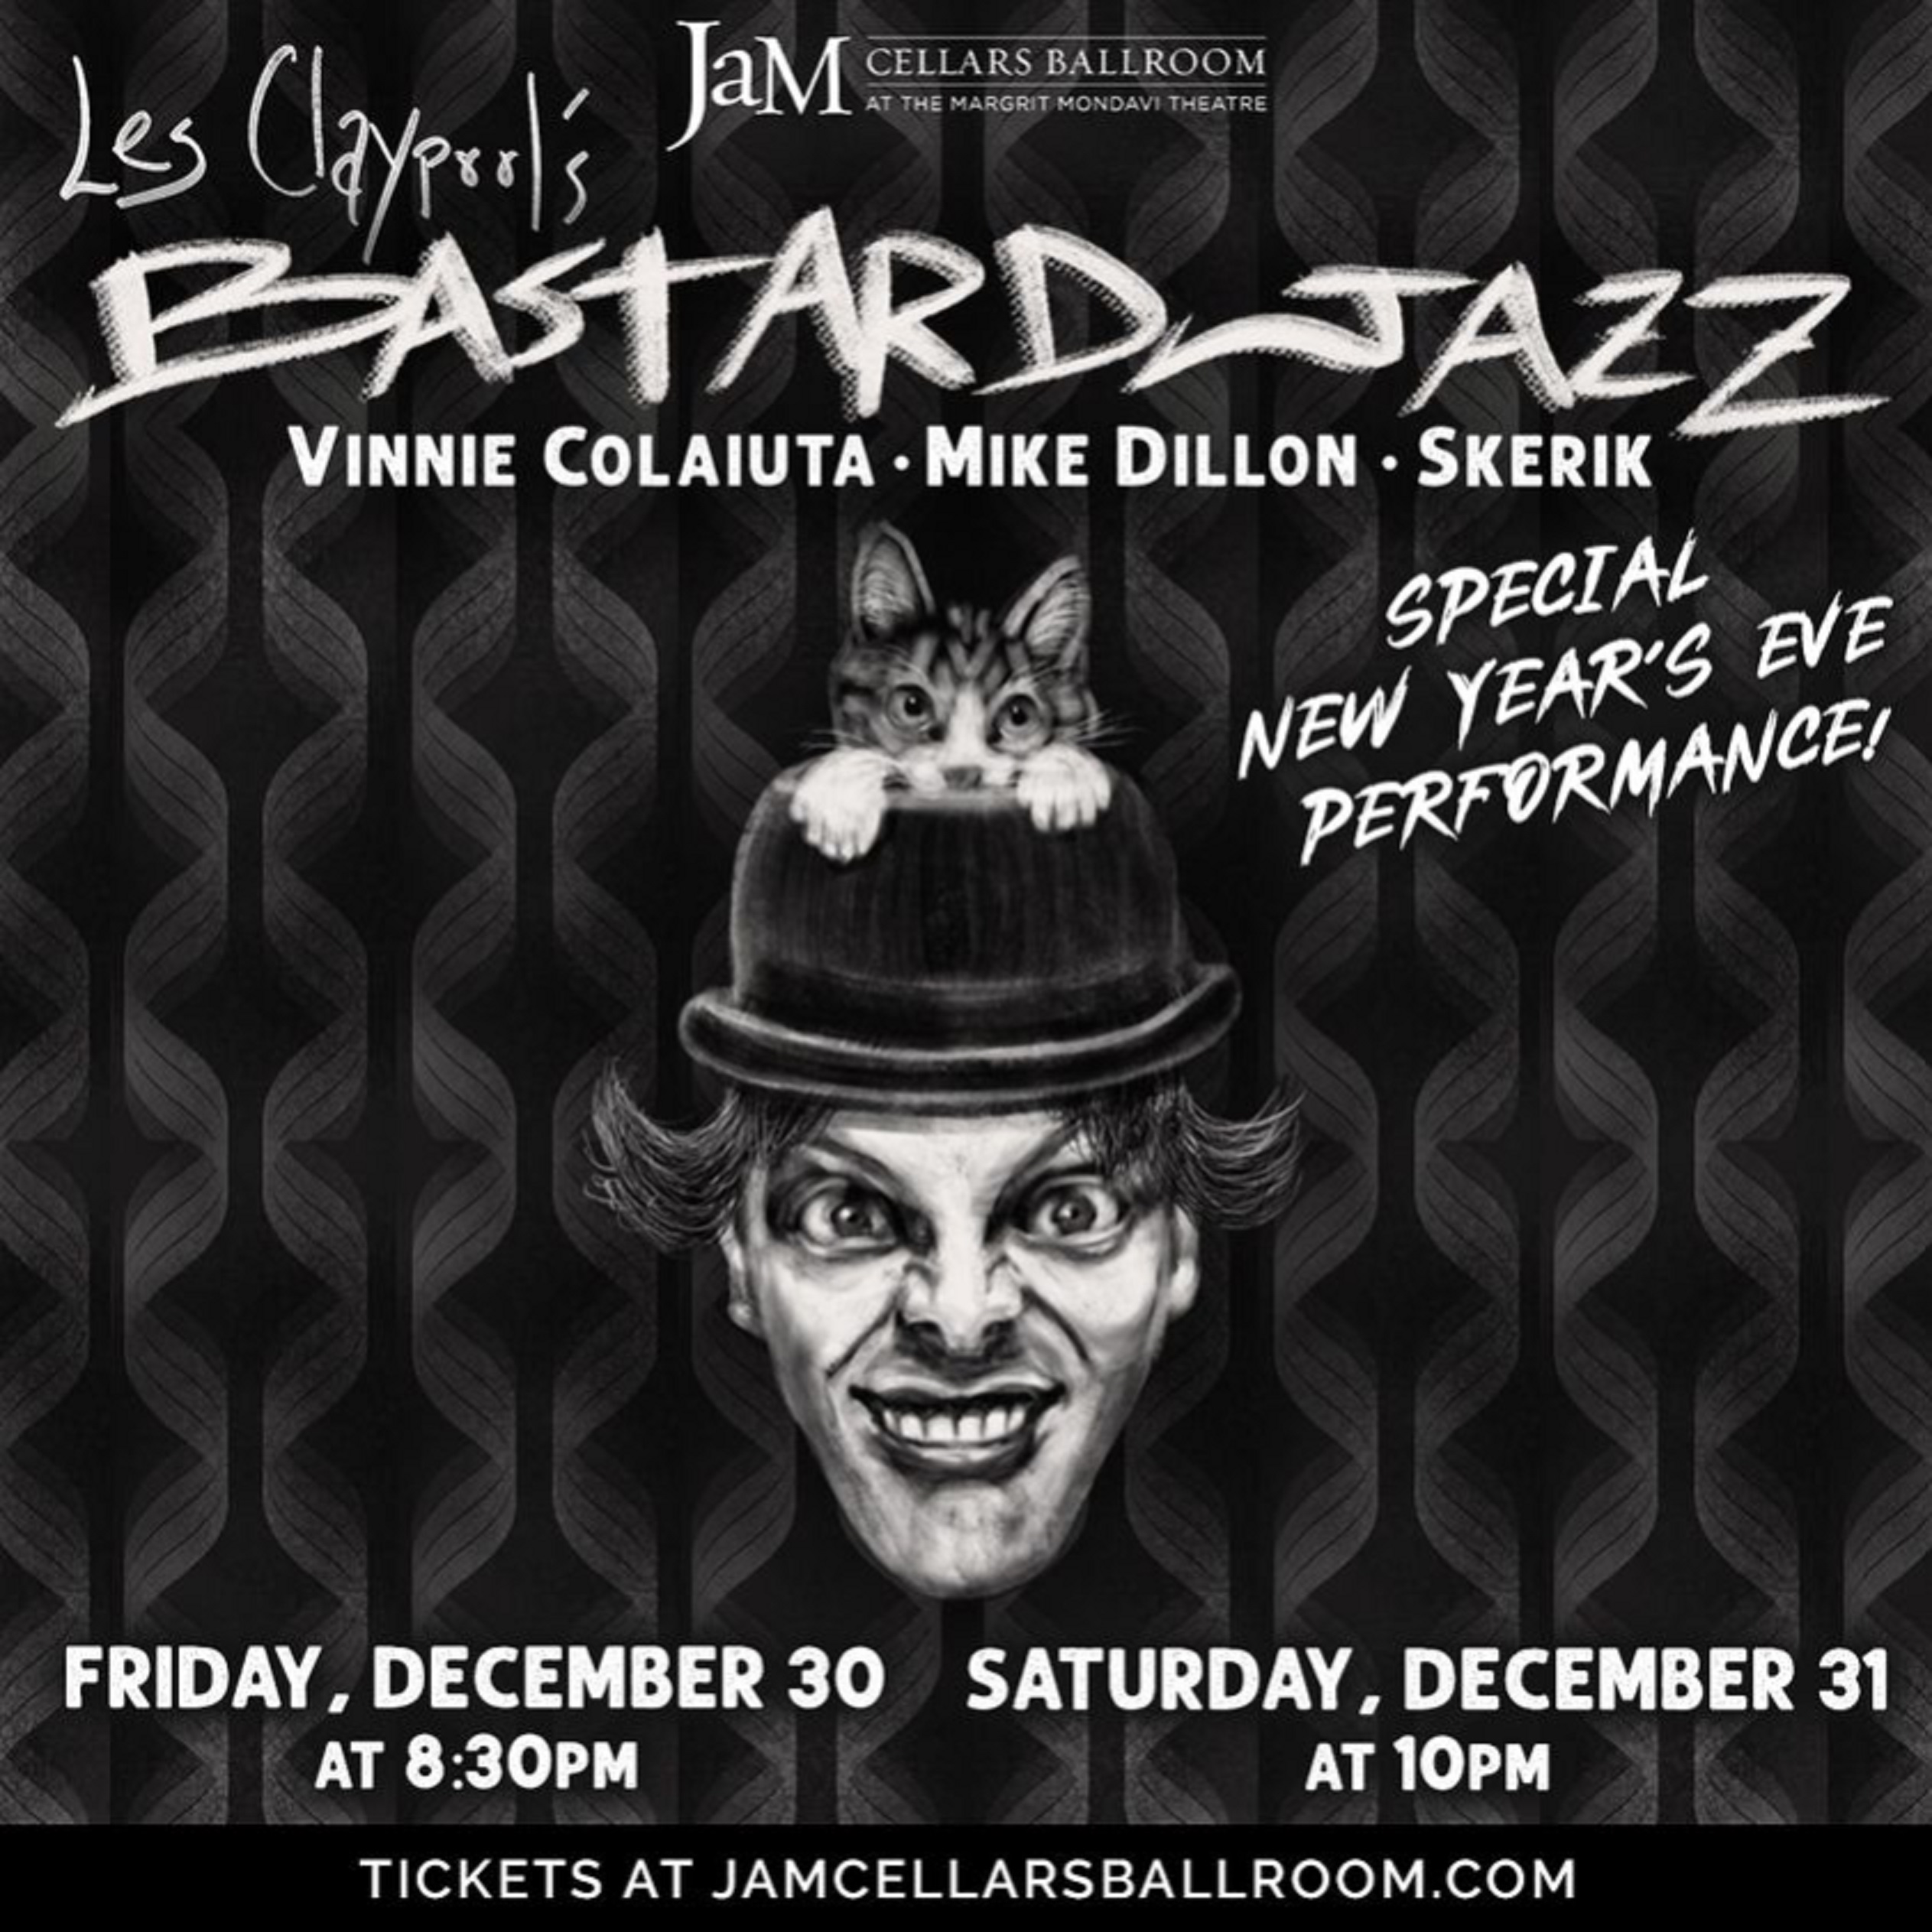 Les Claypool announces NYE performances, comments on special guest dummer Vinnie Colaiuta